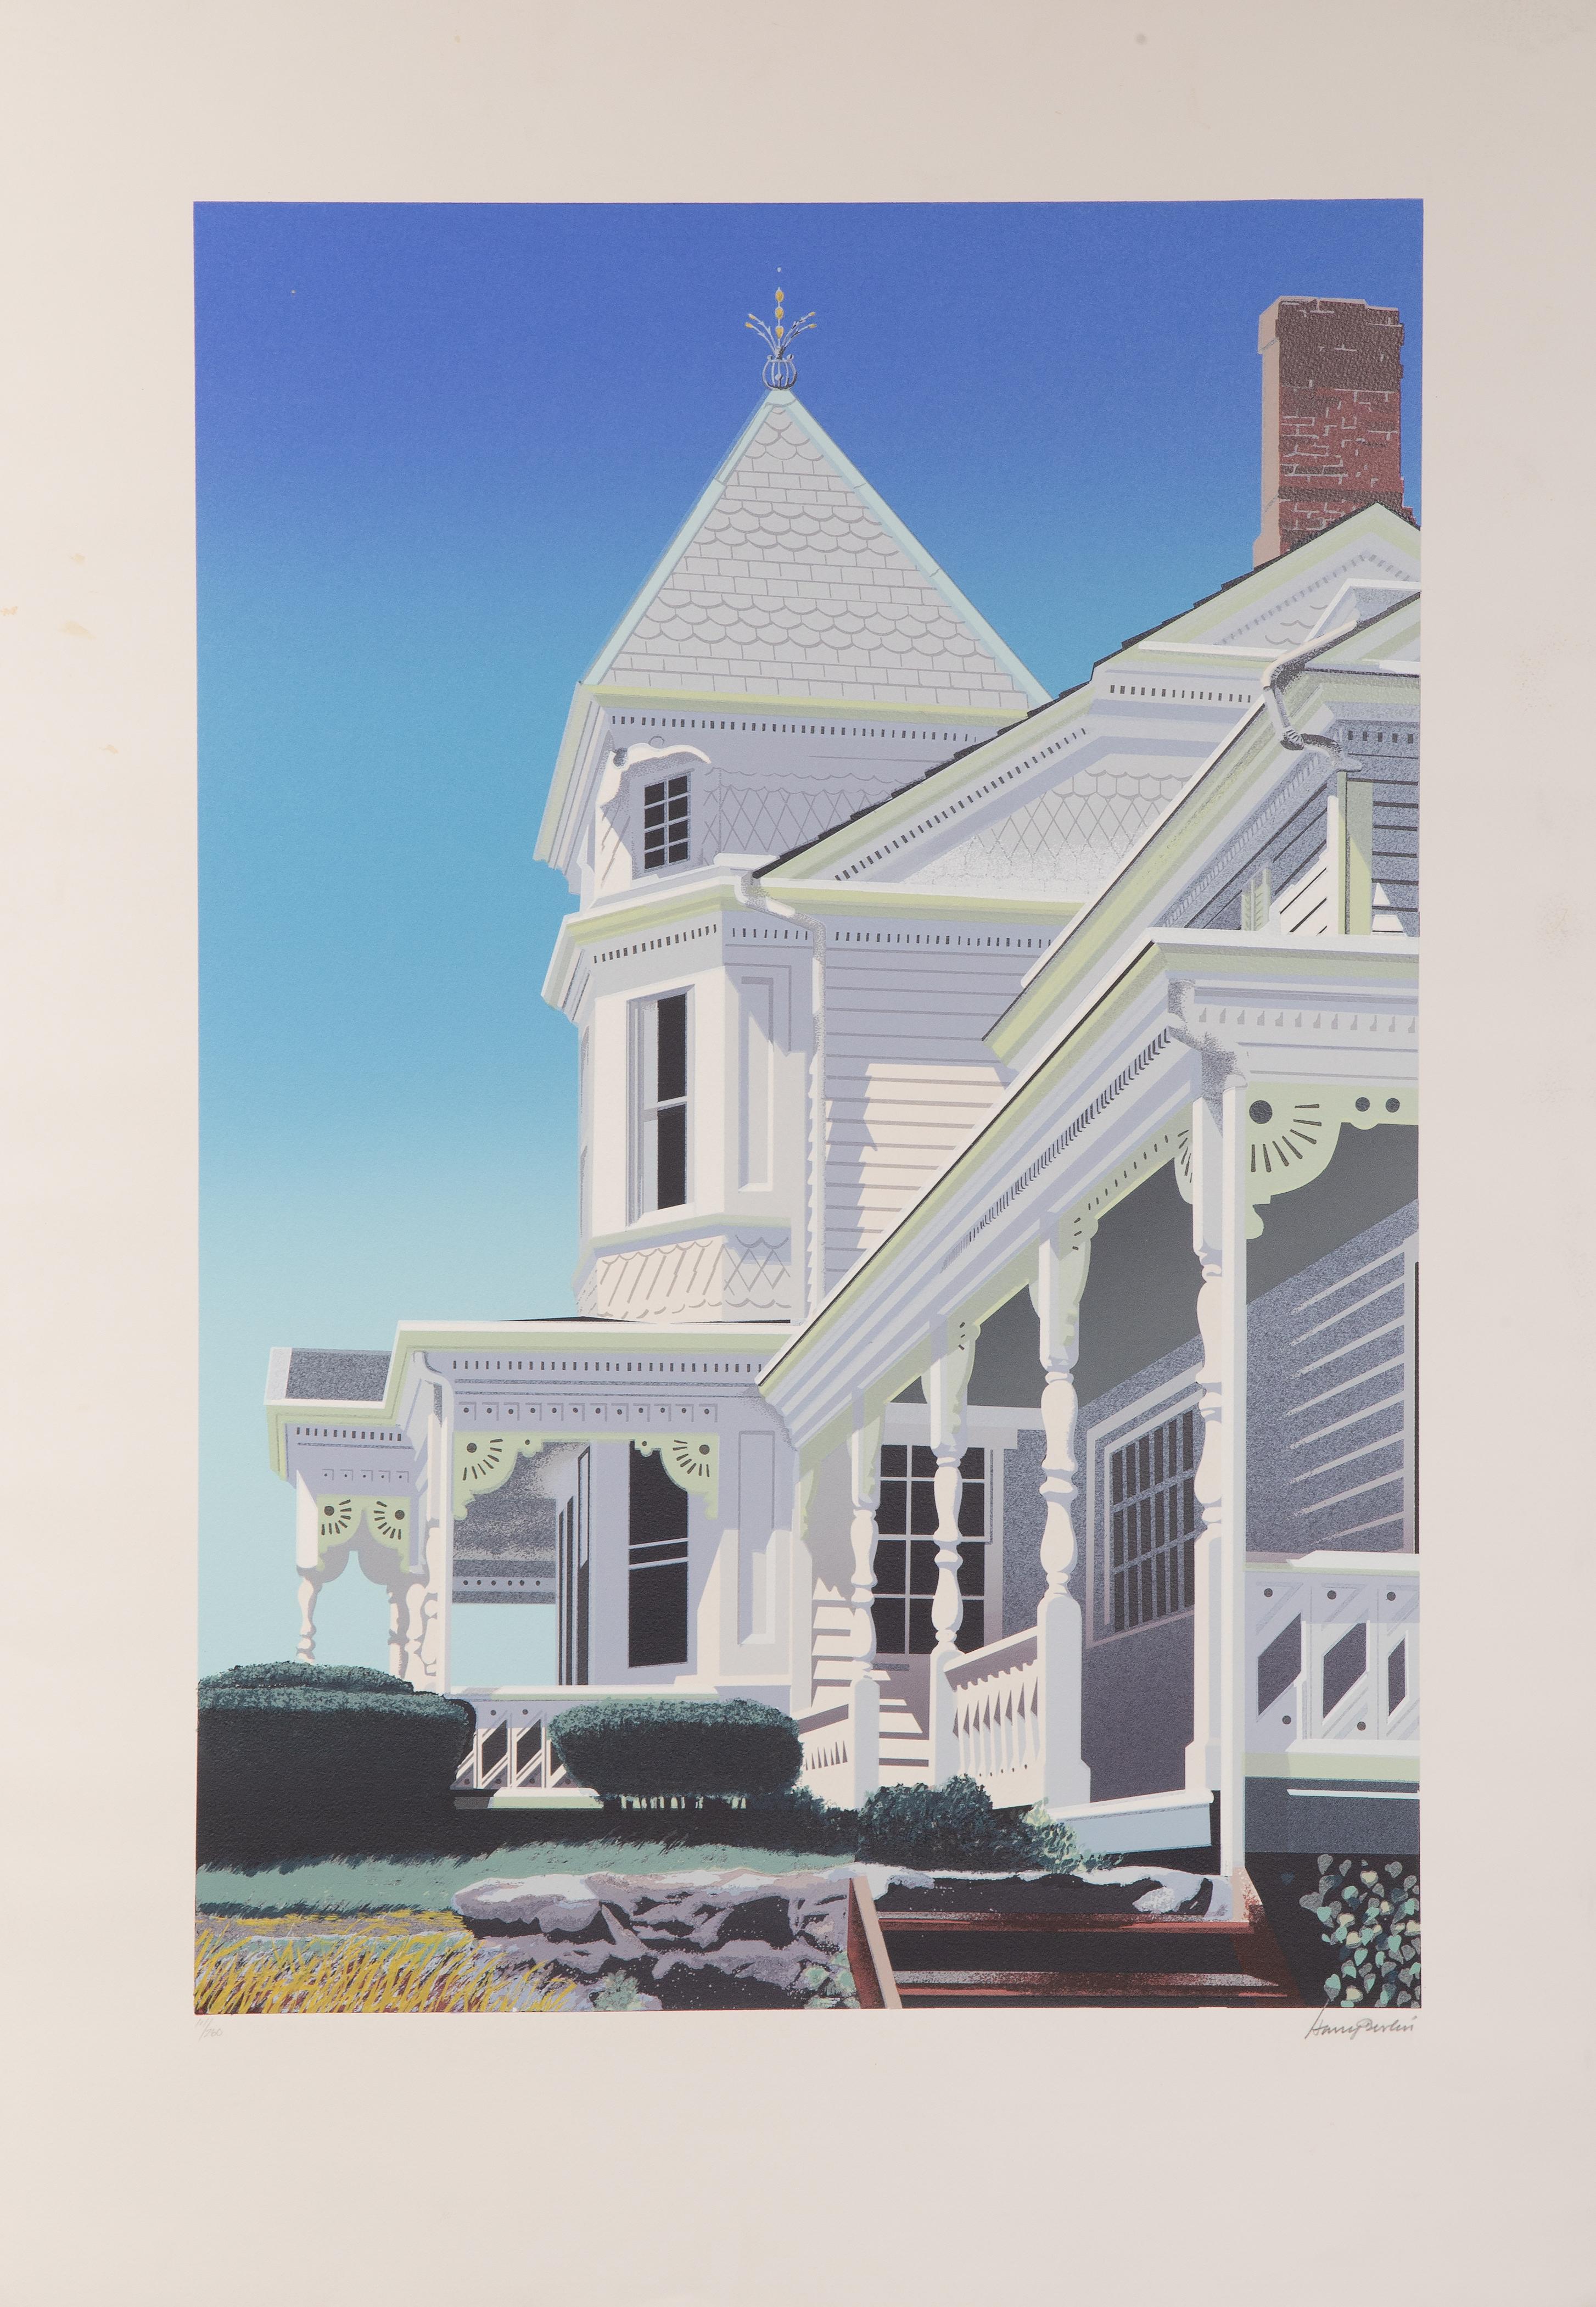 Façade d'une maison victorienne
Harry Devlin, Américain (1918-2001)
Lithographie sur Arches, signée et numérotée au crayon.
Édition de 111/260
Taille de l'image : 32 x 22 pouces
Taille : 41.5 x 29.5 in. (105.41 x 74.93 cm)